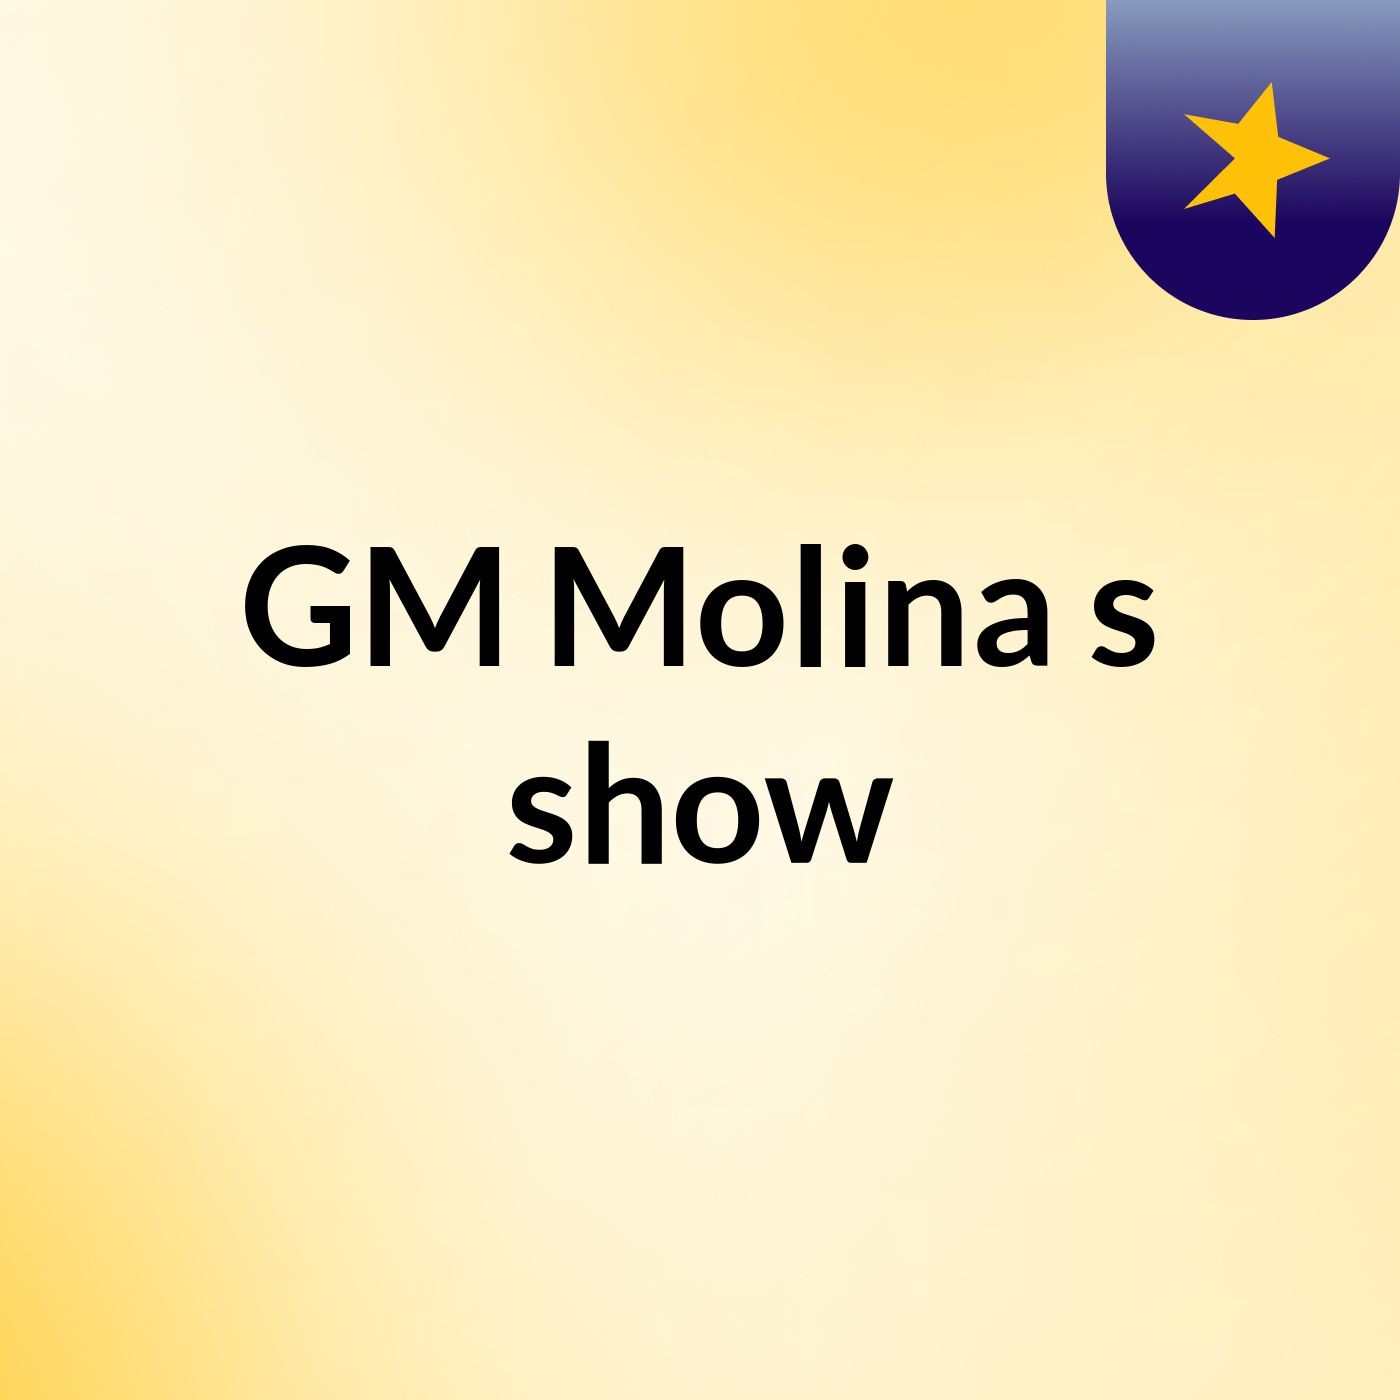 GM Molina's show